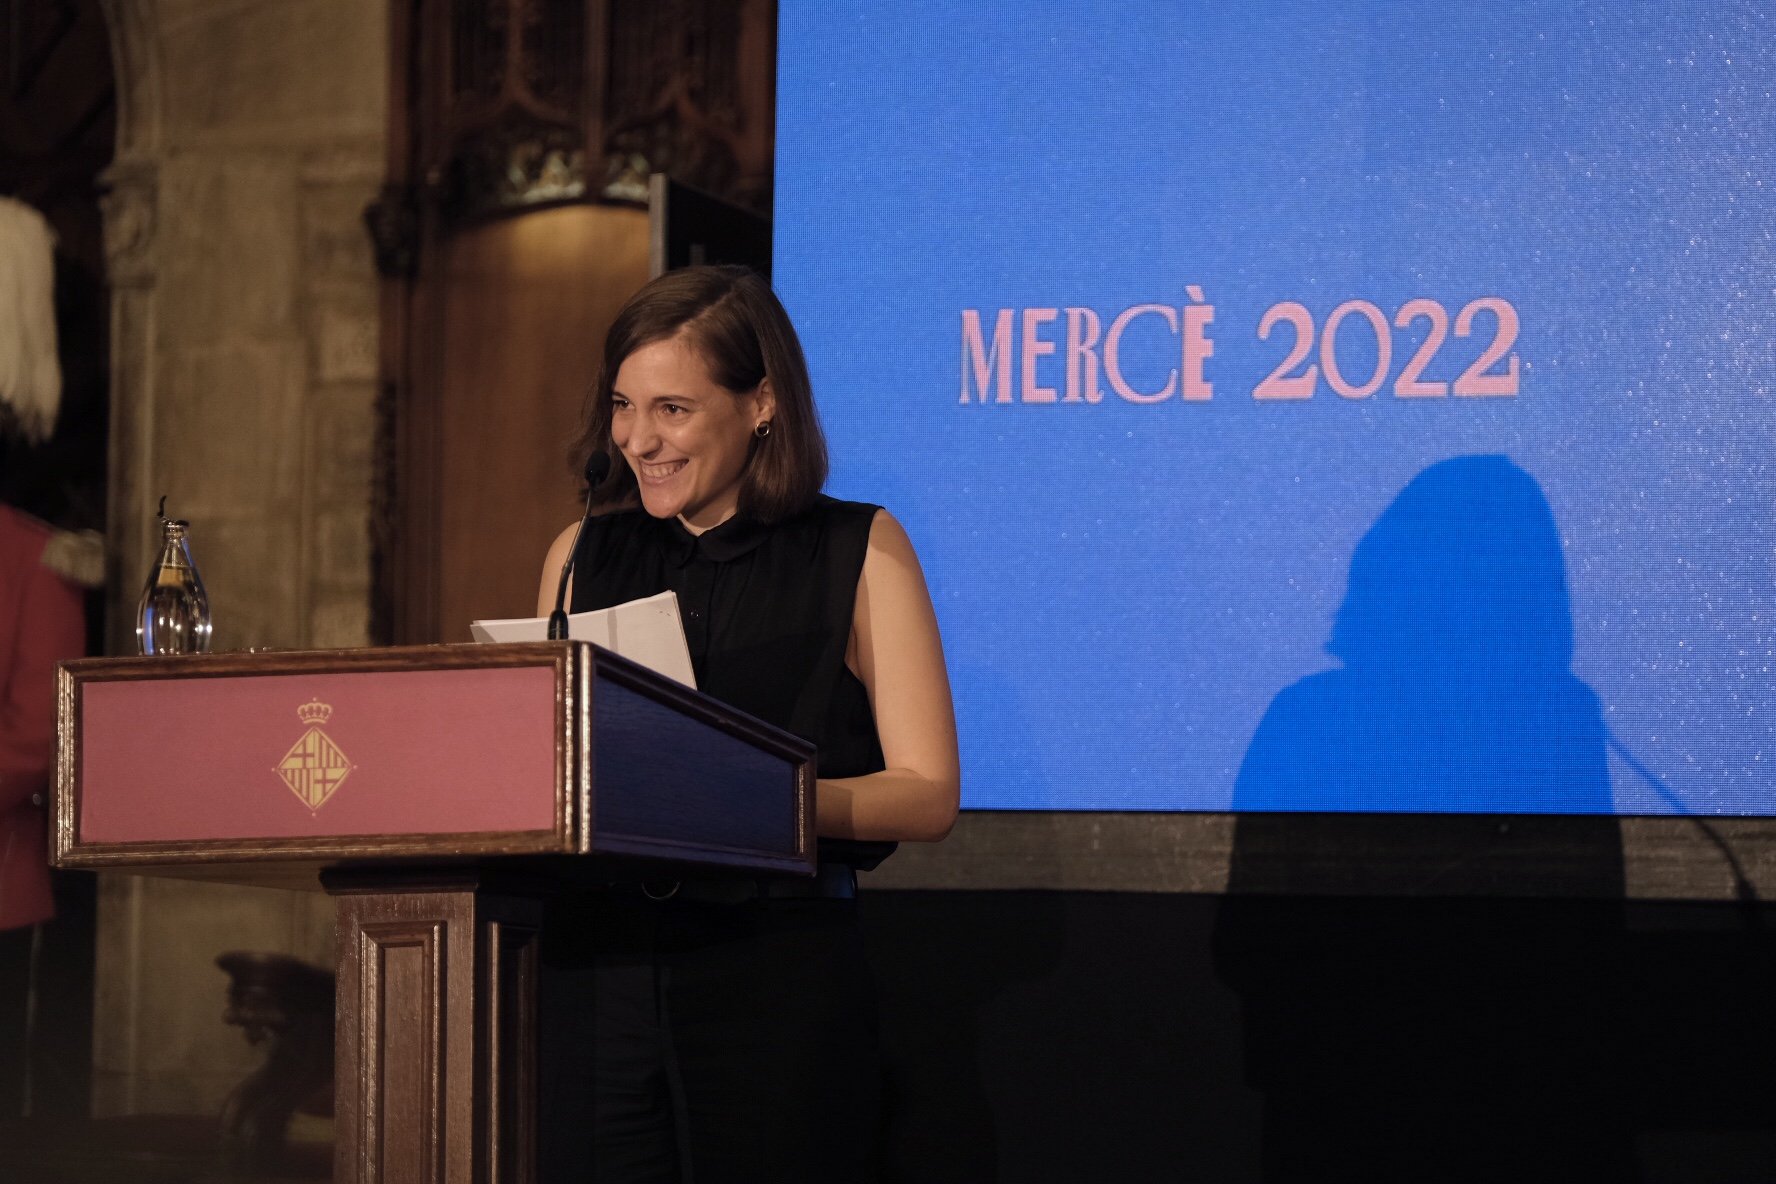 Carla Simón s’endú l’Oscar al pregó més original en l’obertura de la Mercè 2022